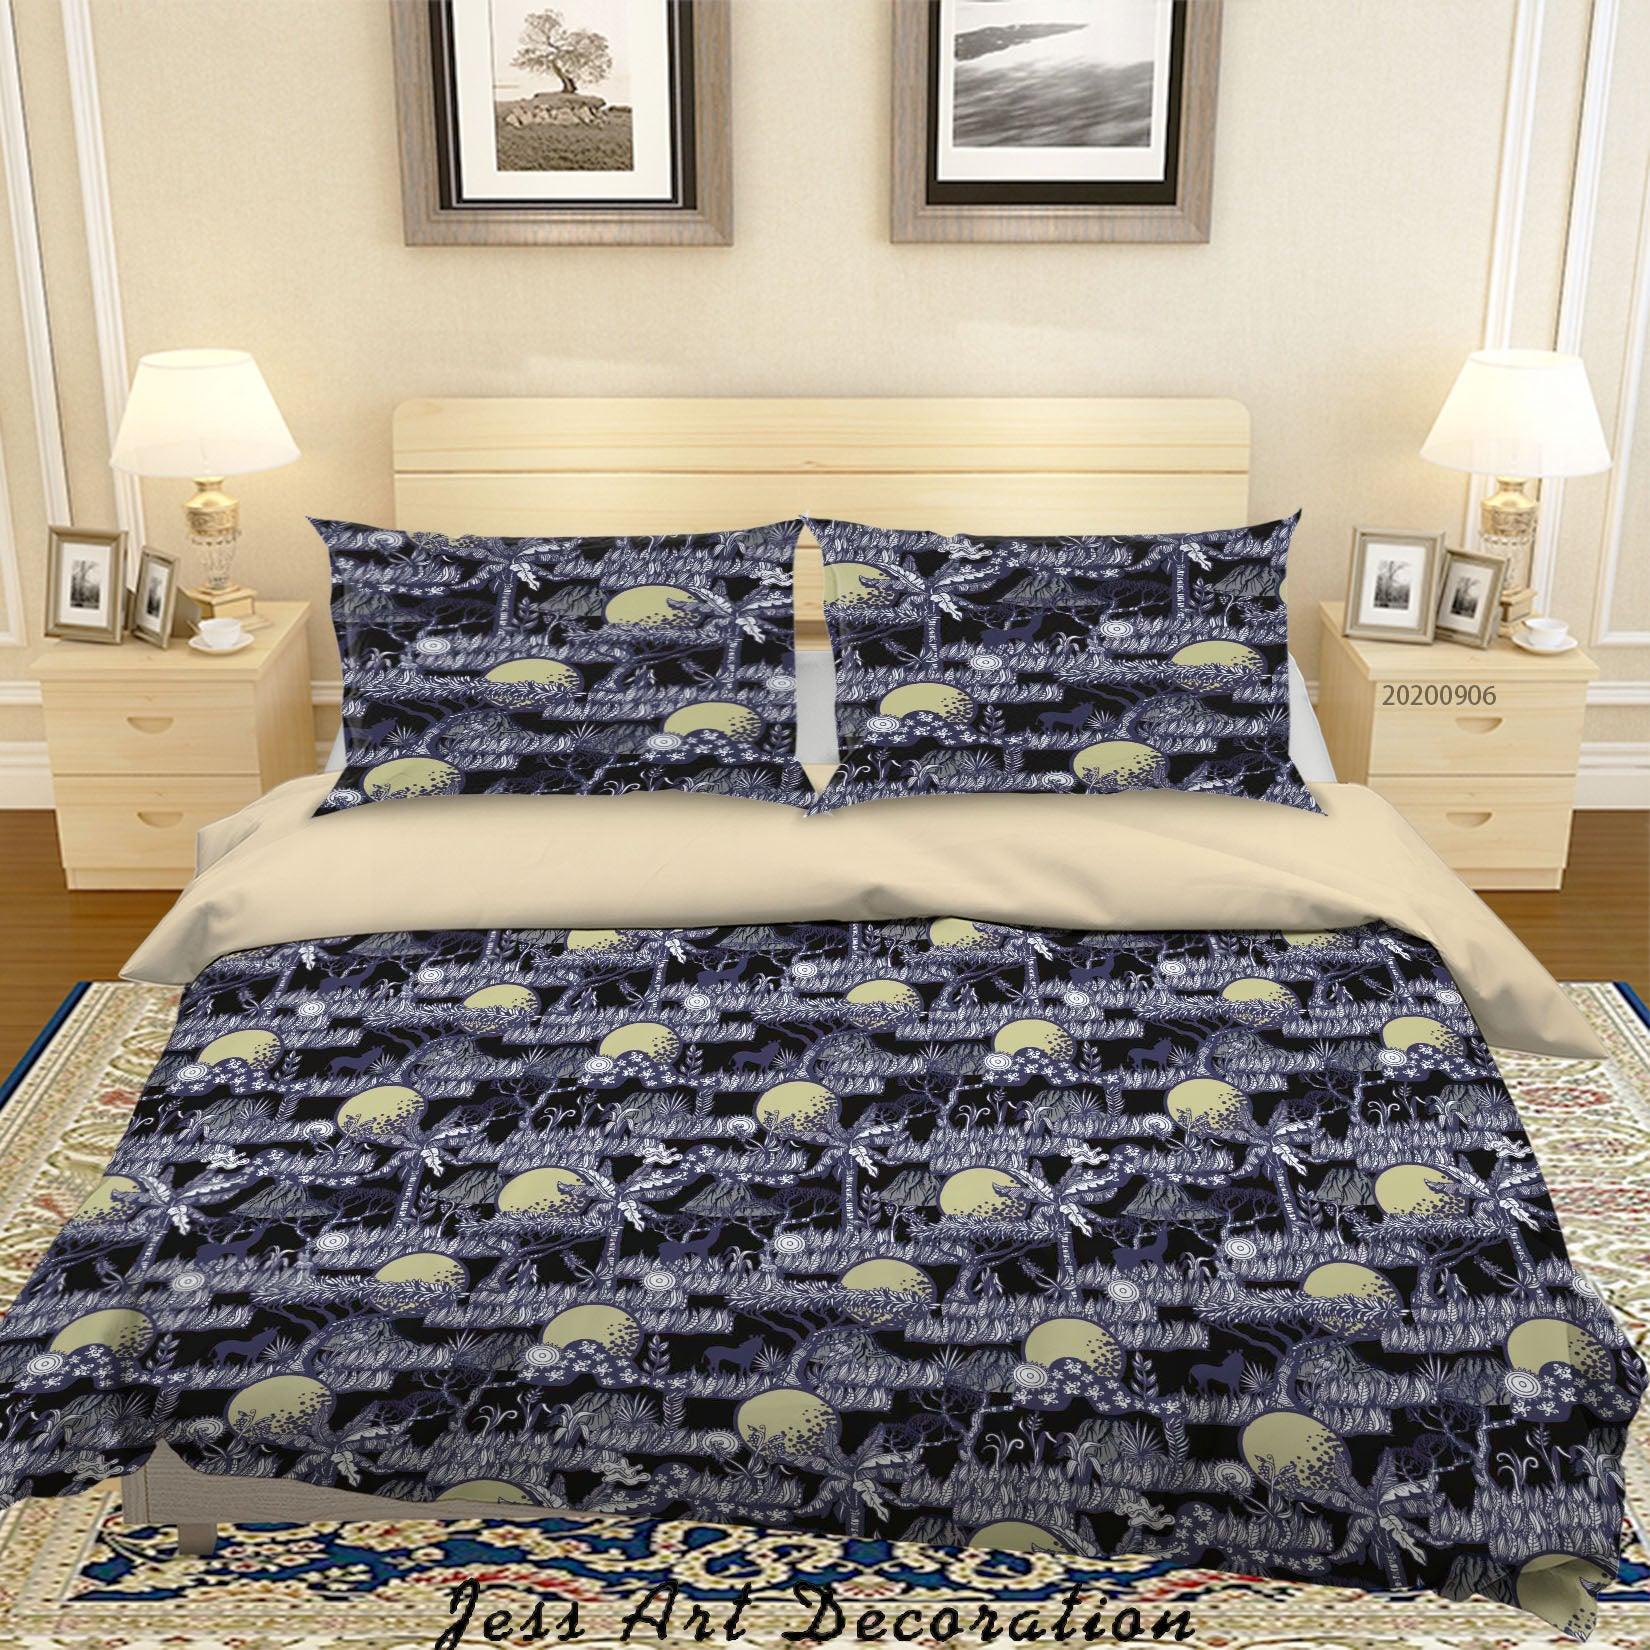 3D Vintage Tropical Leaves Pattern Quilt Cover Set Bedding Set Duvet Cover Pillowcases WJ 3665- Jess Art Decoration